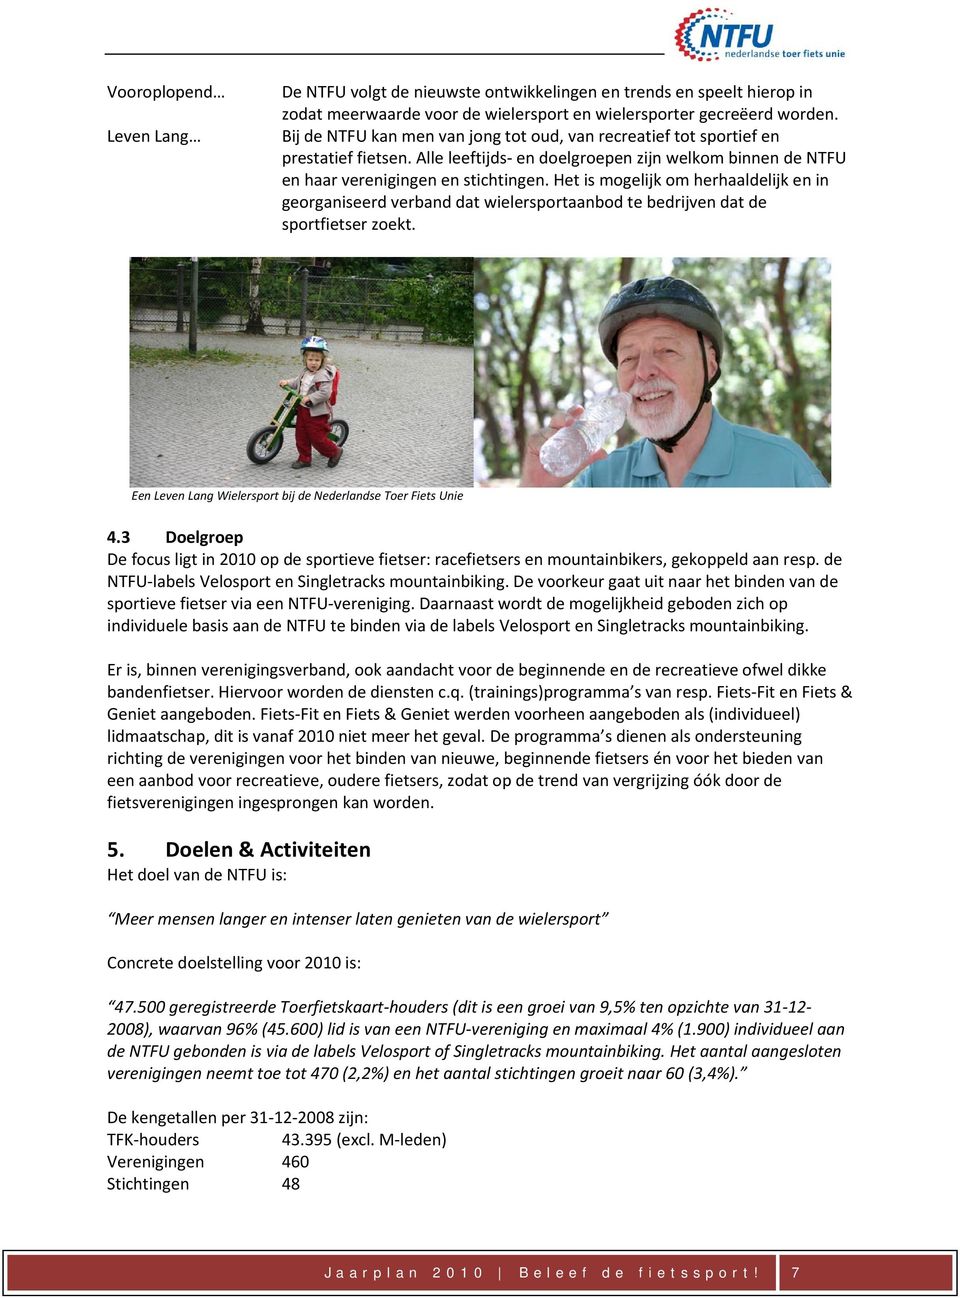 Het is mogelijk om herhaaldelijk en in georganiseerd verband dat wielersportaanbod te bedrijven dat de sportfietser zoekt. Een Leven Lang Wielersport bij de Nederlandse Toer Fiets Unie 4.